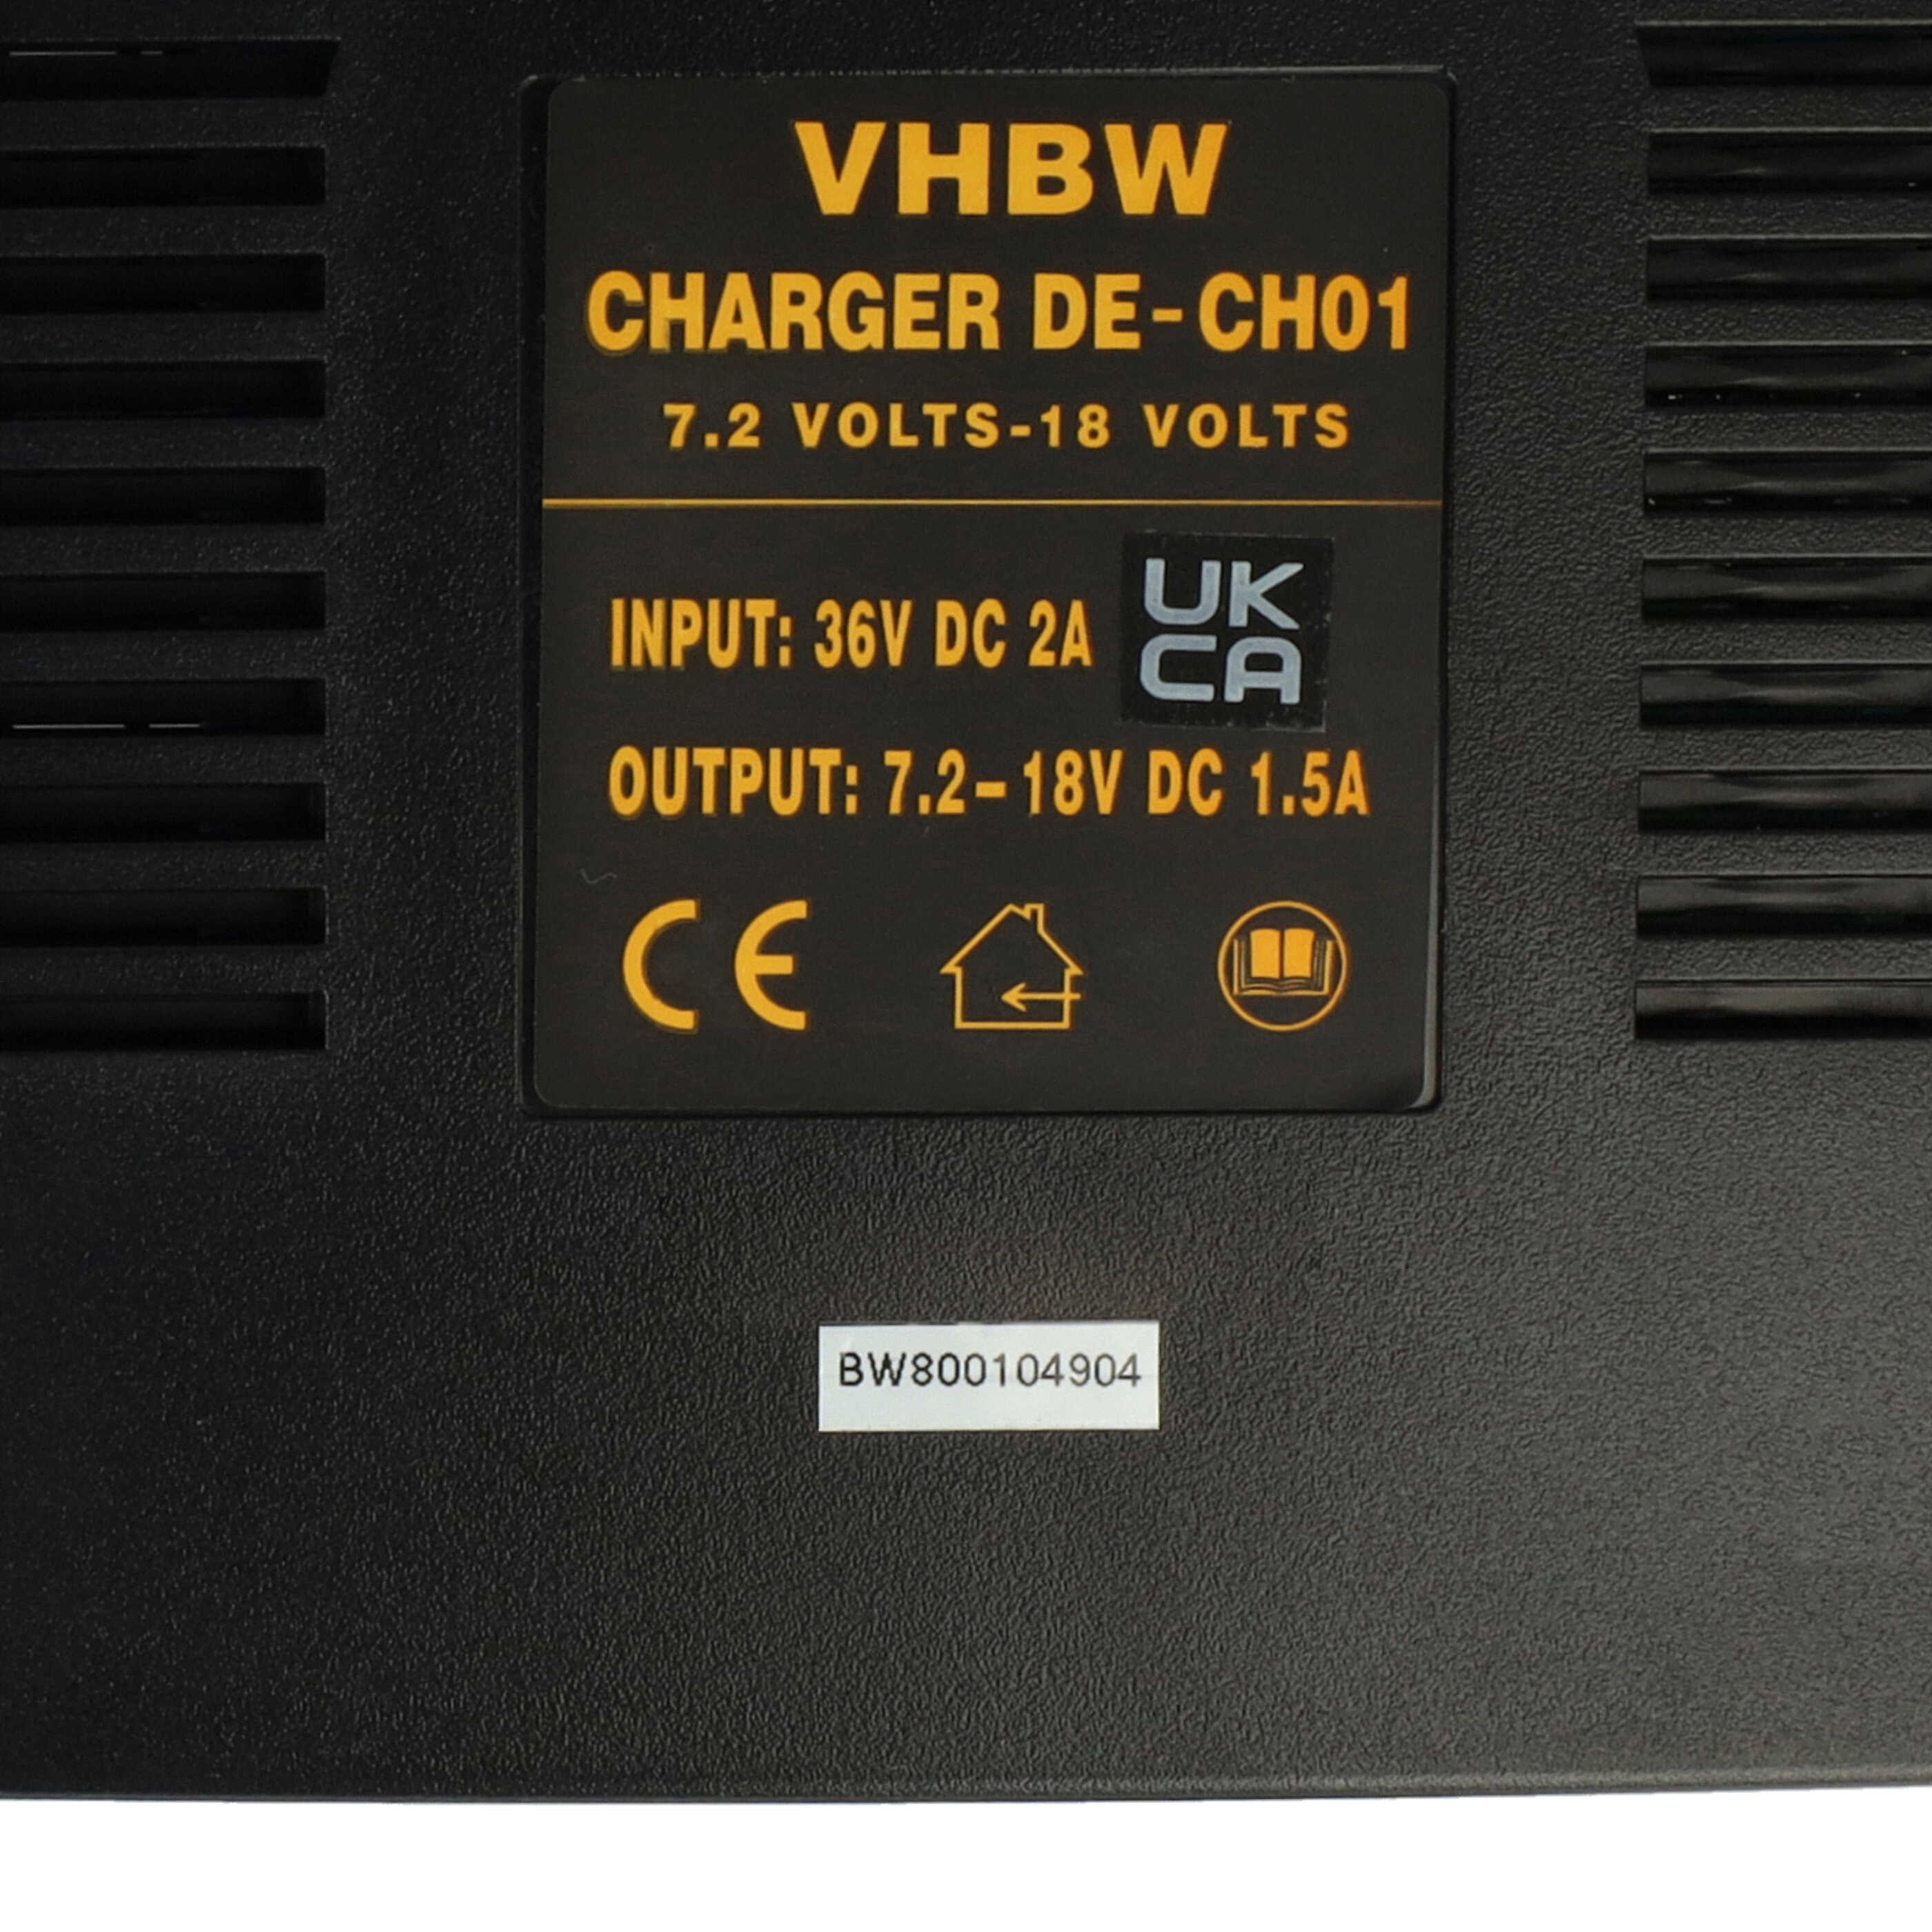 Chargeur remplace Dewalt DE 9116, DE9116 pour batterie d'outil électrique Roller